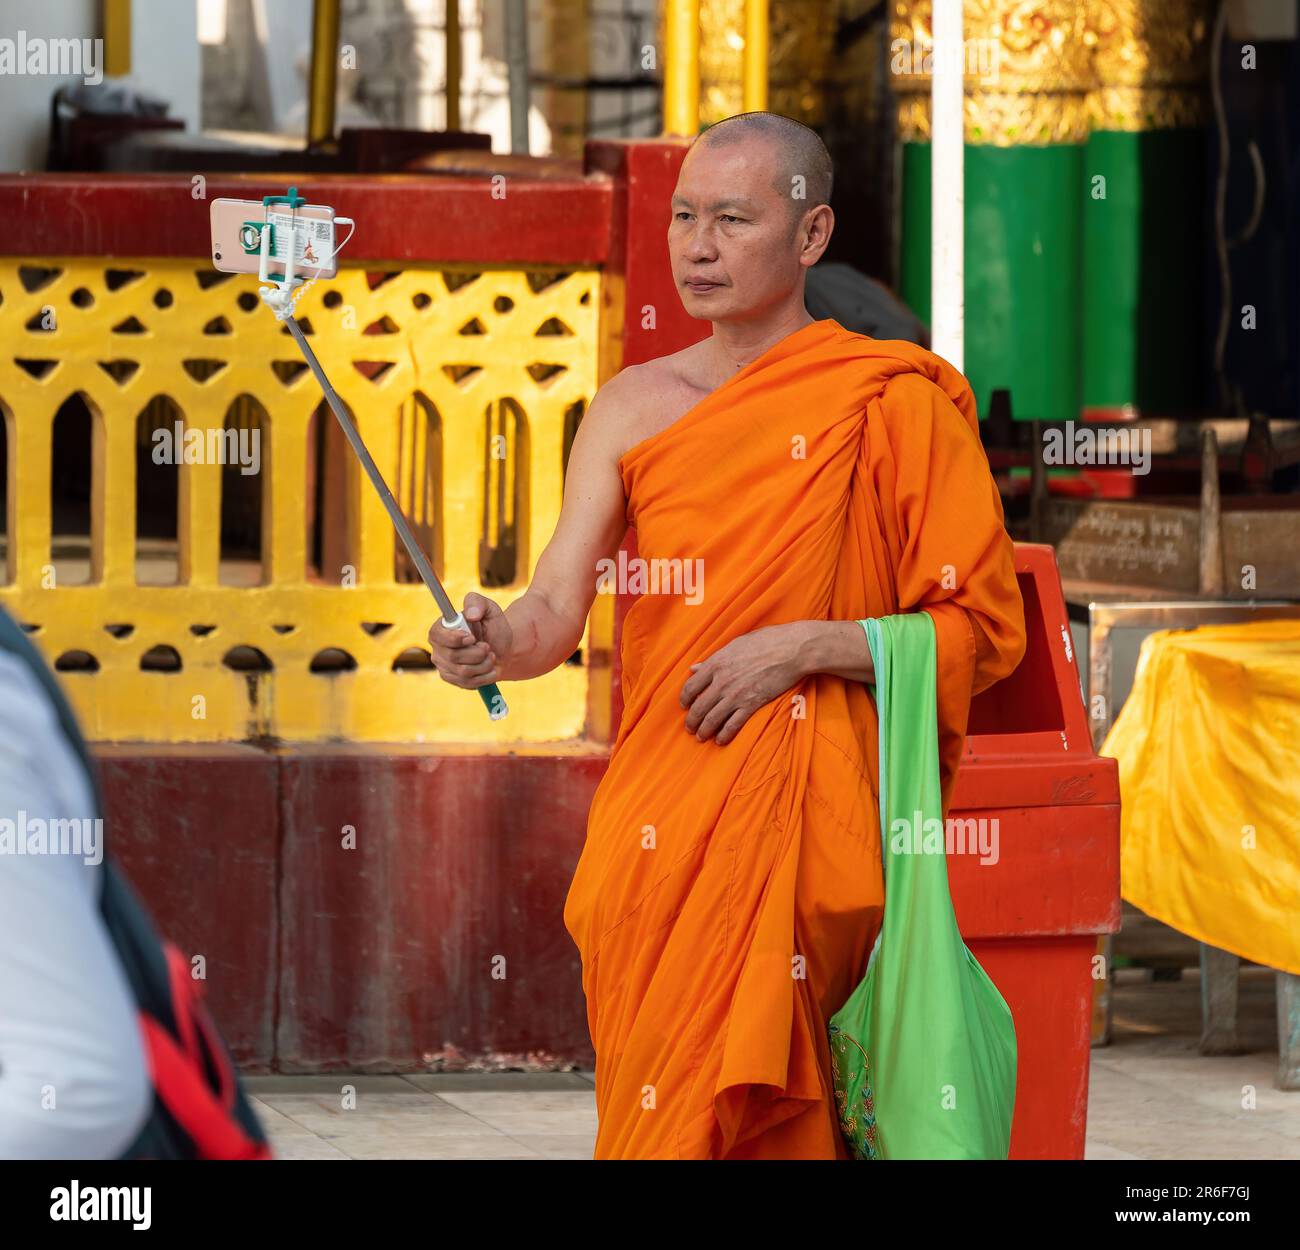 Moine bouddhiste prenant un selfie à la Pagode Shwedagon, le monument le plus célèbre de Yangon, au Myanmar. Banque D'Images